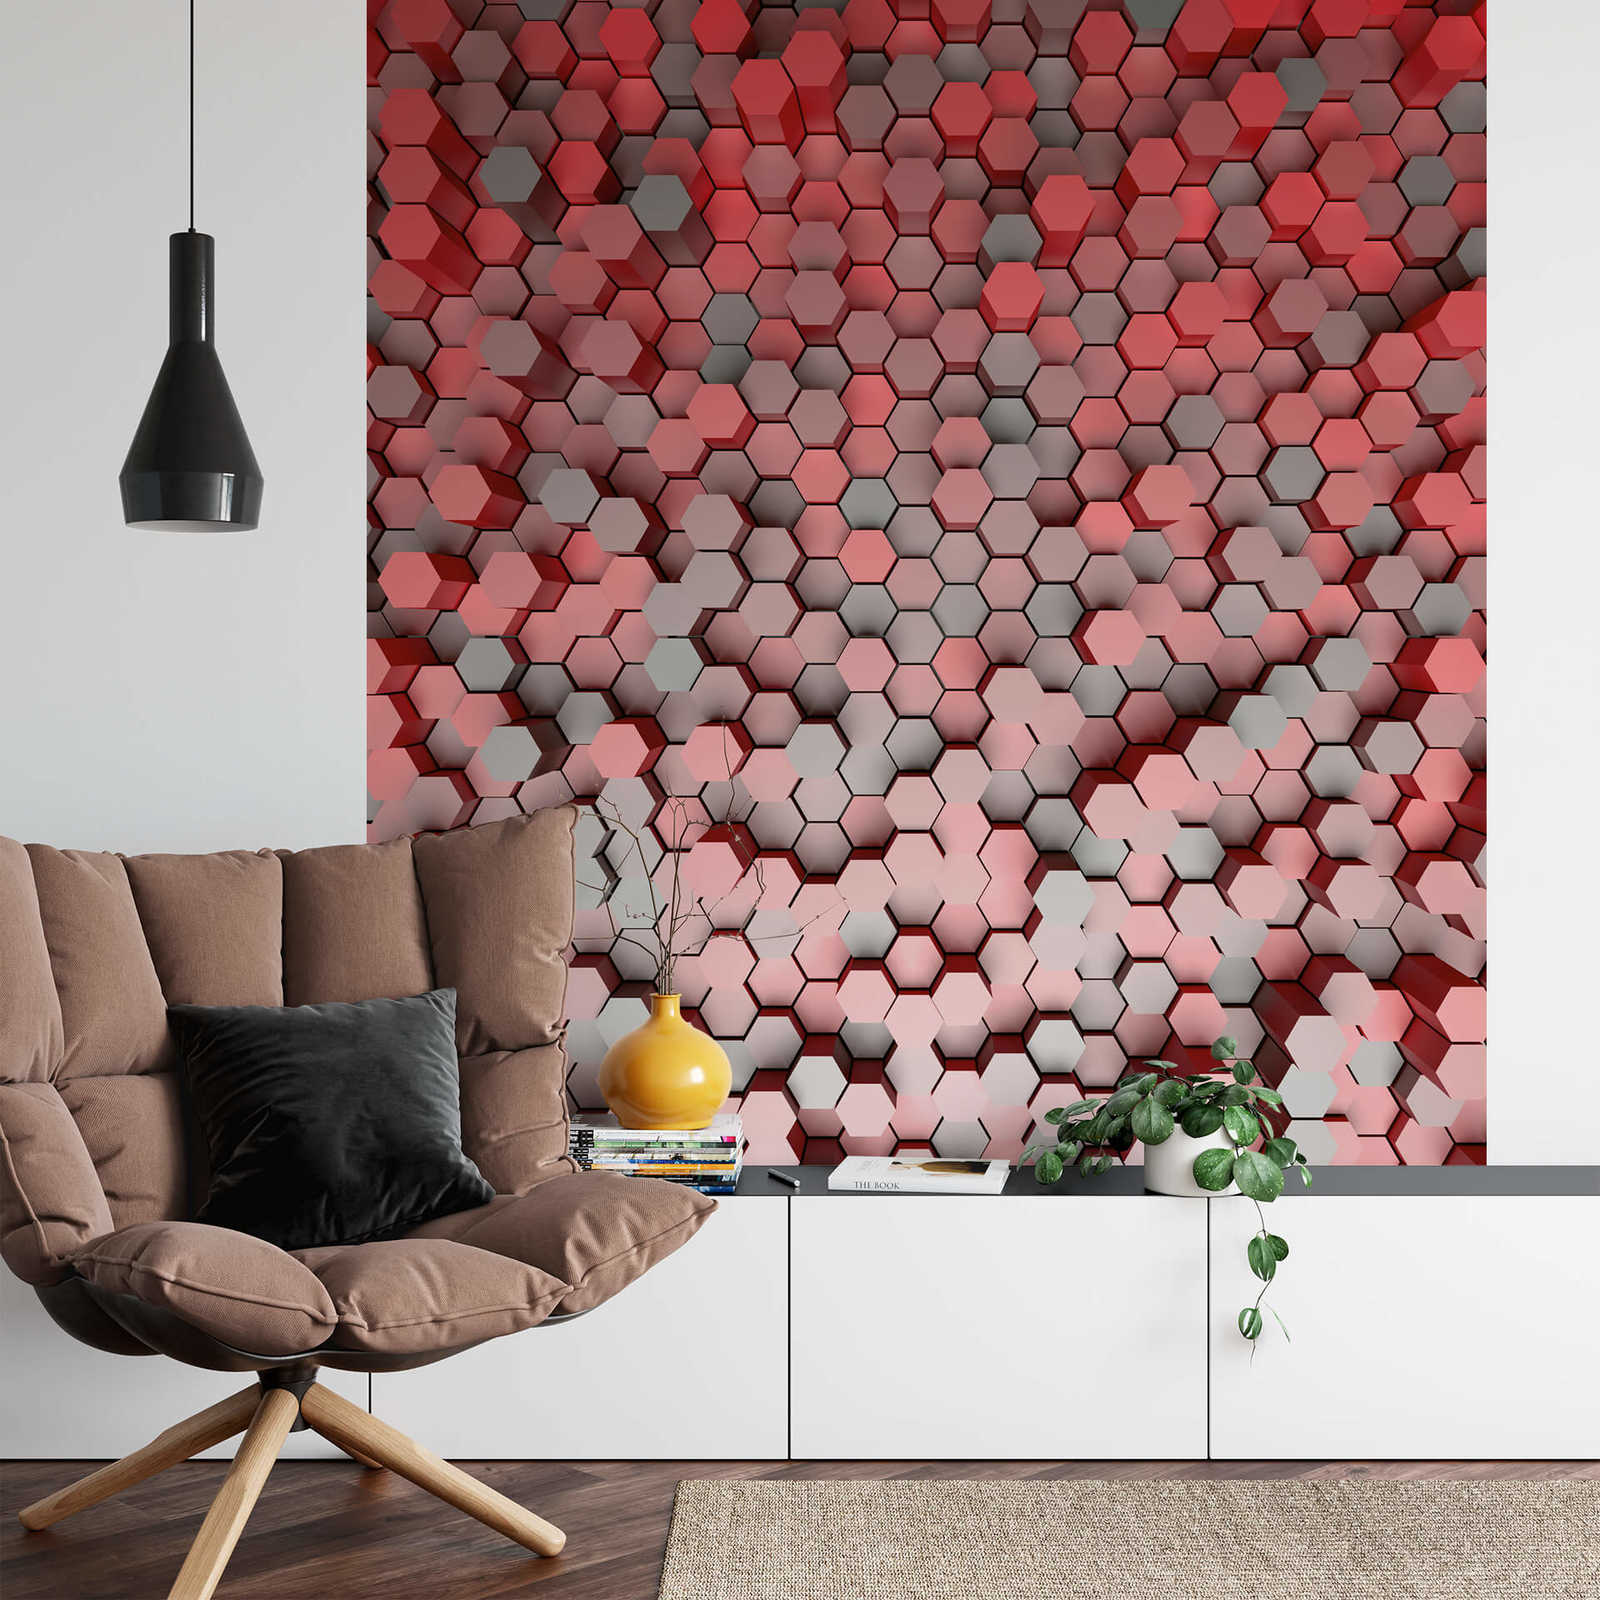             Fotomurali 3D Hexagon Graphic Design - Rosso, grigio
        